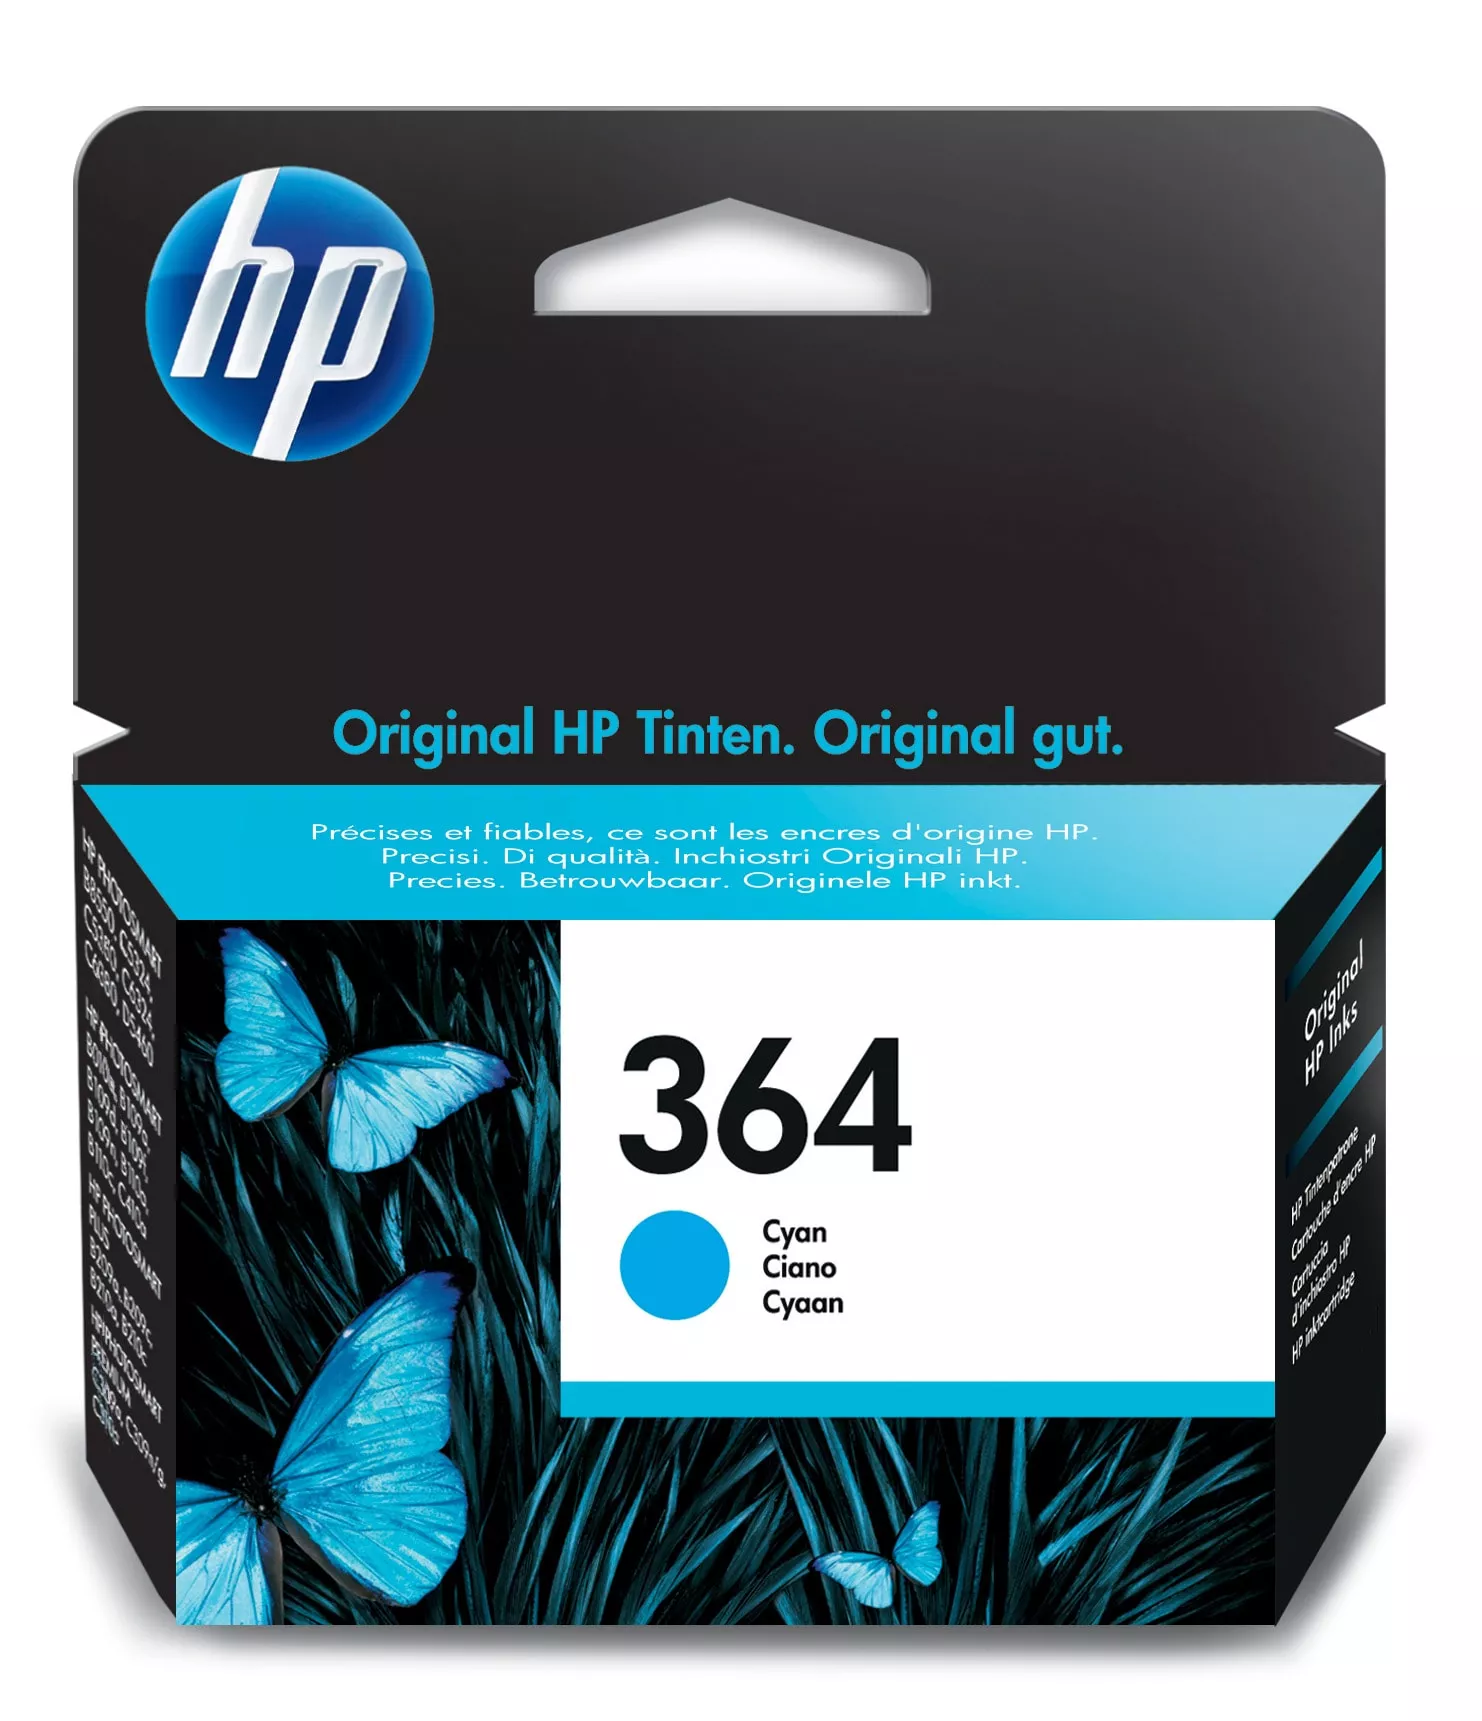 Achat HP 364 cartouche d'encre cyan authentique au meilleur prix